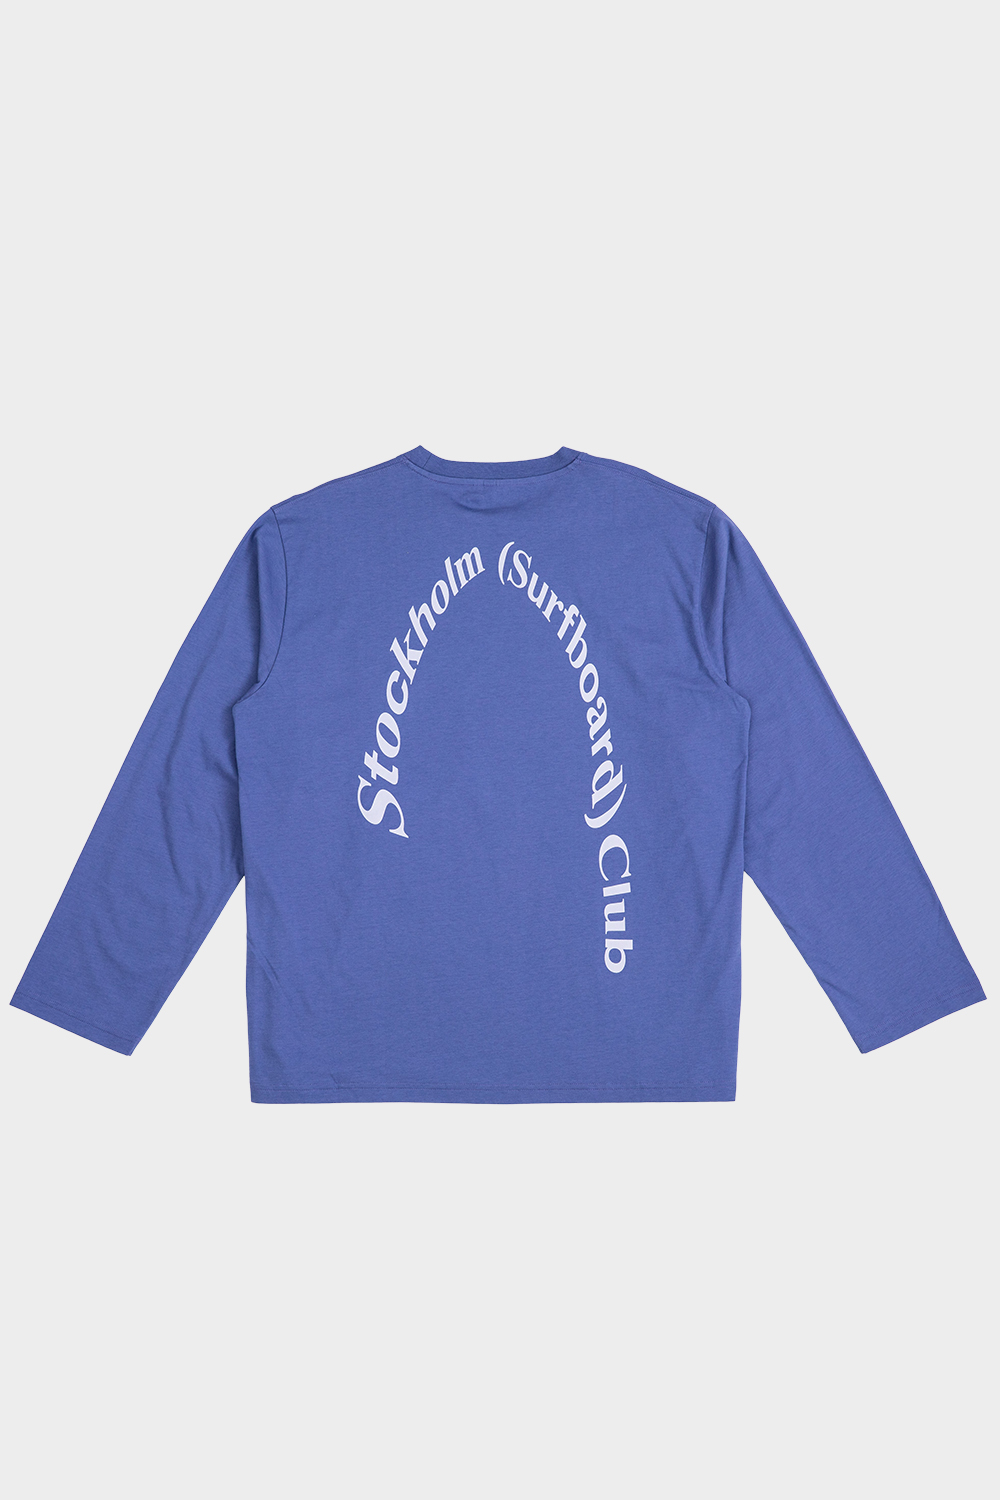 stockholm (surfboard) club - t-shirts - 글라스하우스